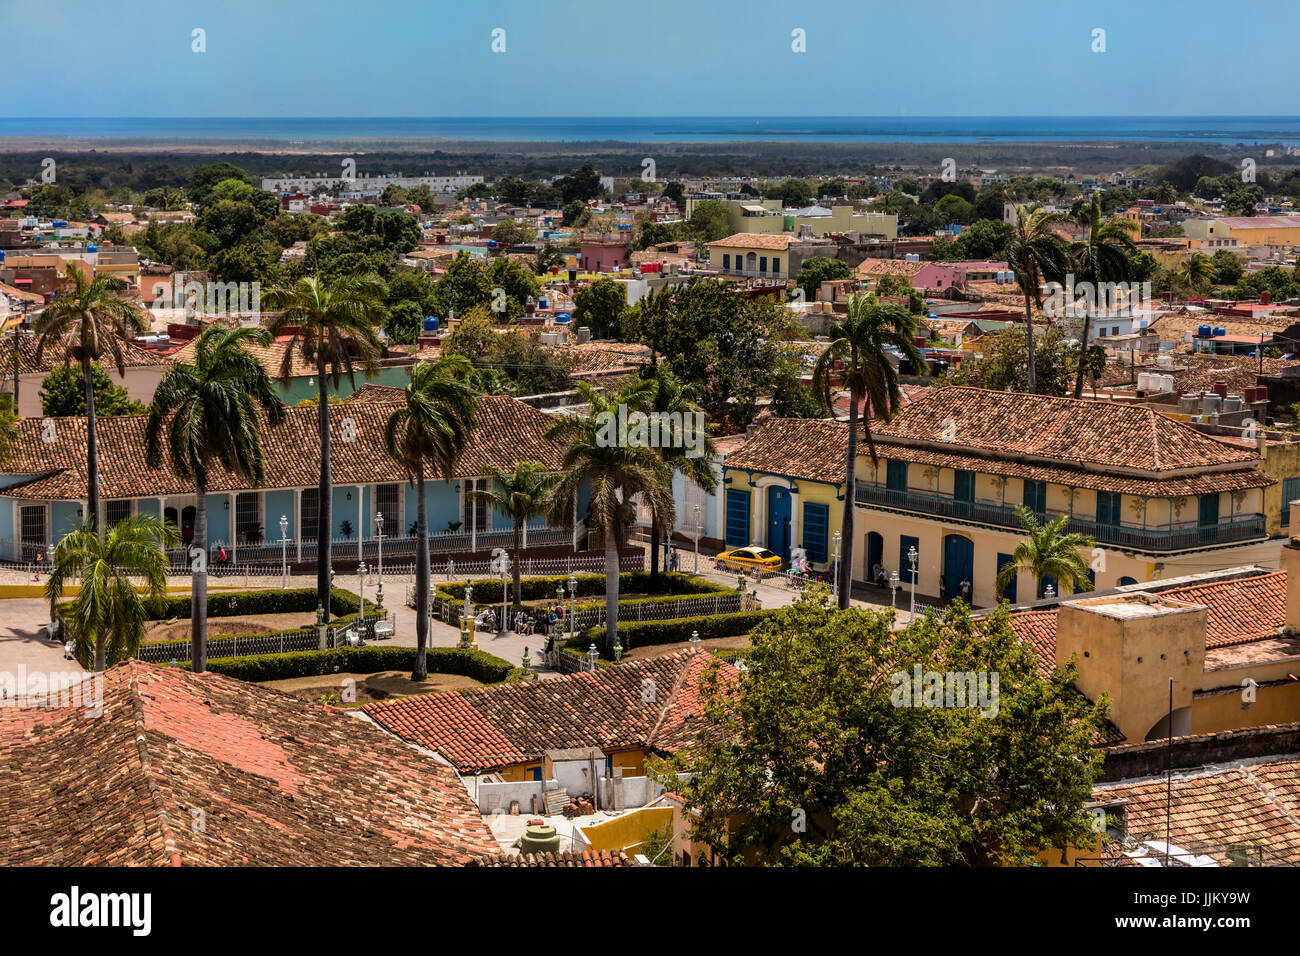 La Plaza Mayor est entourée de bâtiments historiques au cœur de la ville - Trinidad, Cuba Banque D'Images